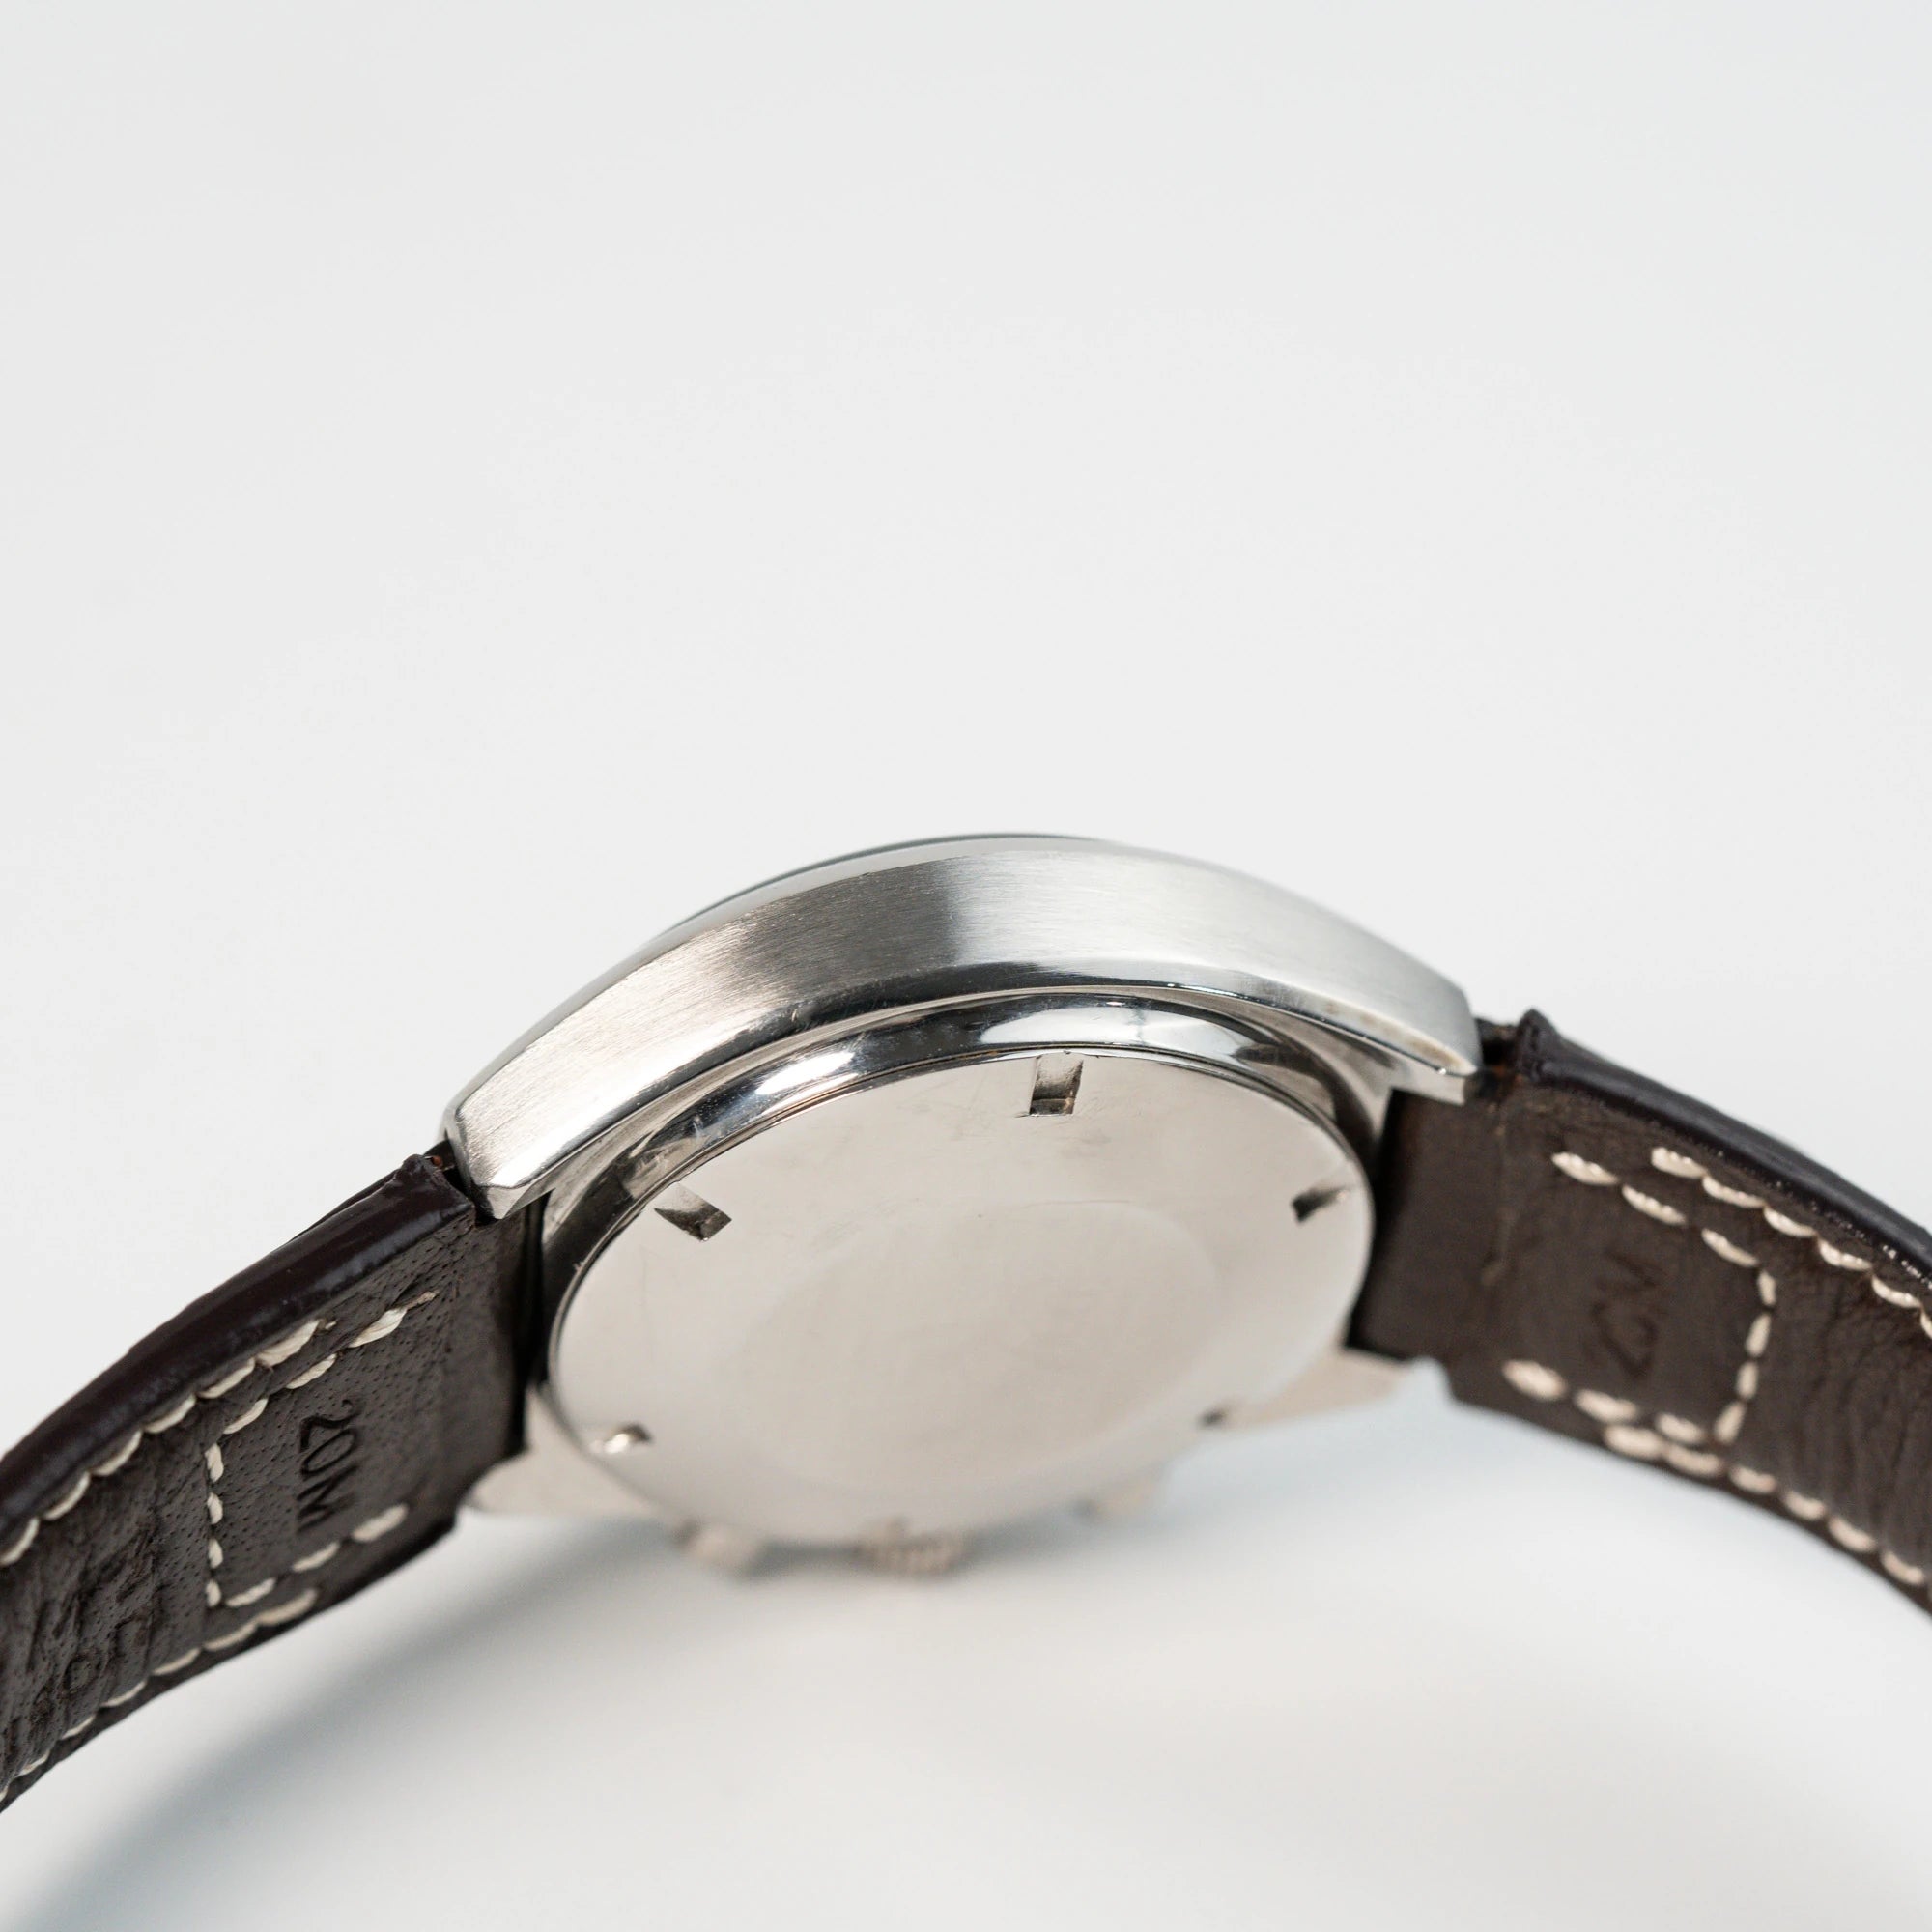 Seitliches Gehäuse und Gehäuseboden der Omega Speedmaster Moonwatch Mark 2 an einem braunen Lederarmband